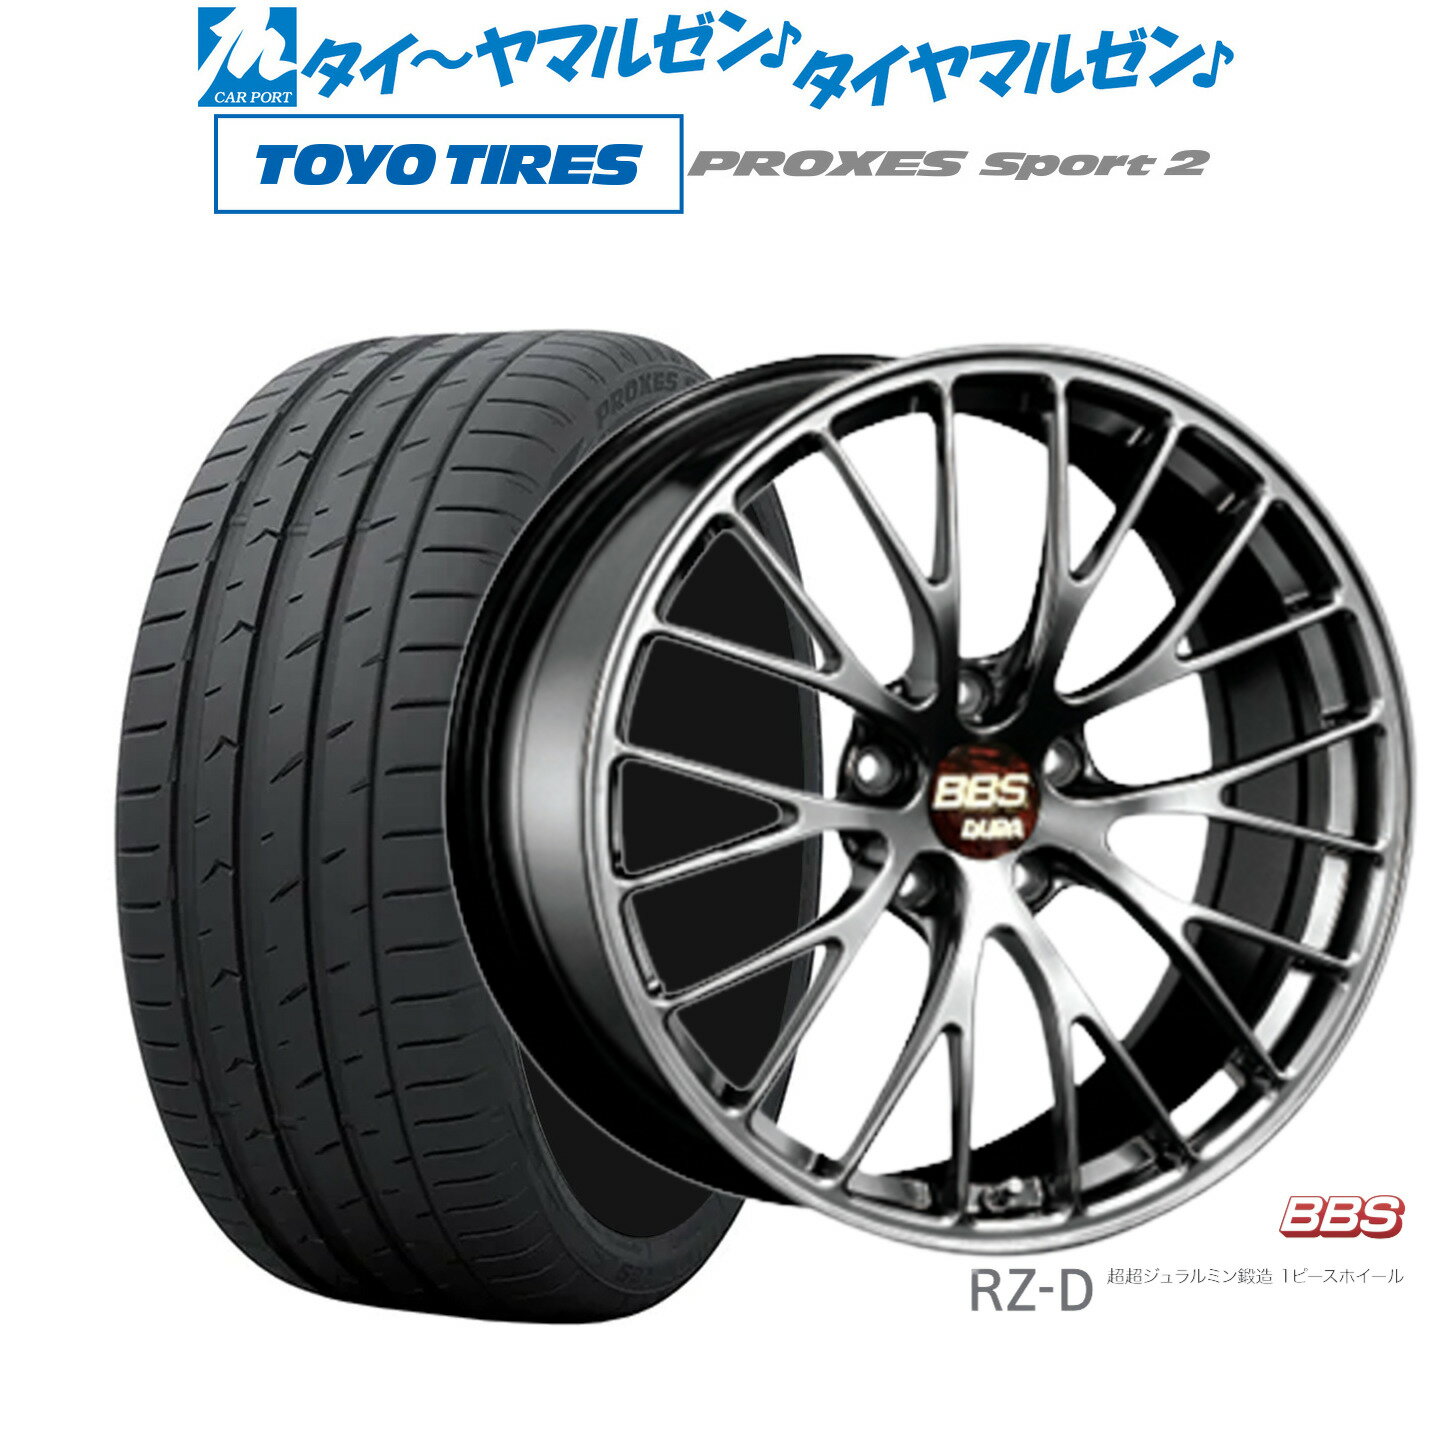 [5/20]割引クーポン配布新品 サマータイヤ ホイール4本セットBBS JAPAN RZ-D20インチ 8.5Jトーヨータイヤ プロクセス PROXES スポーツ2 245/35R20